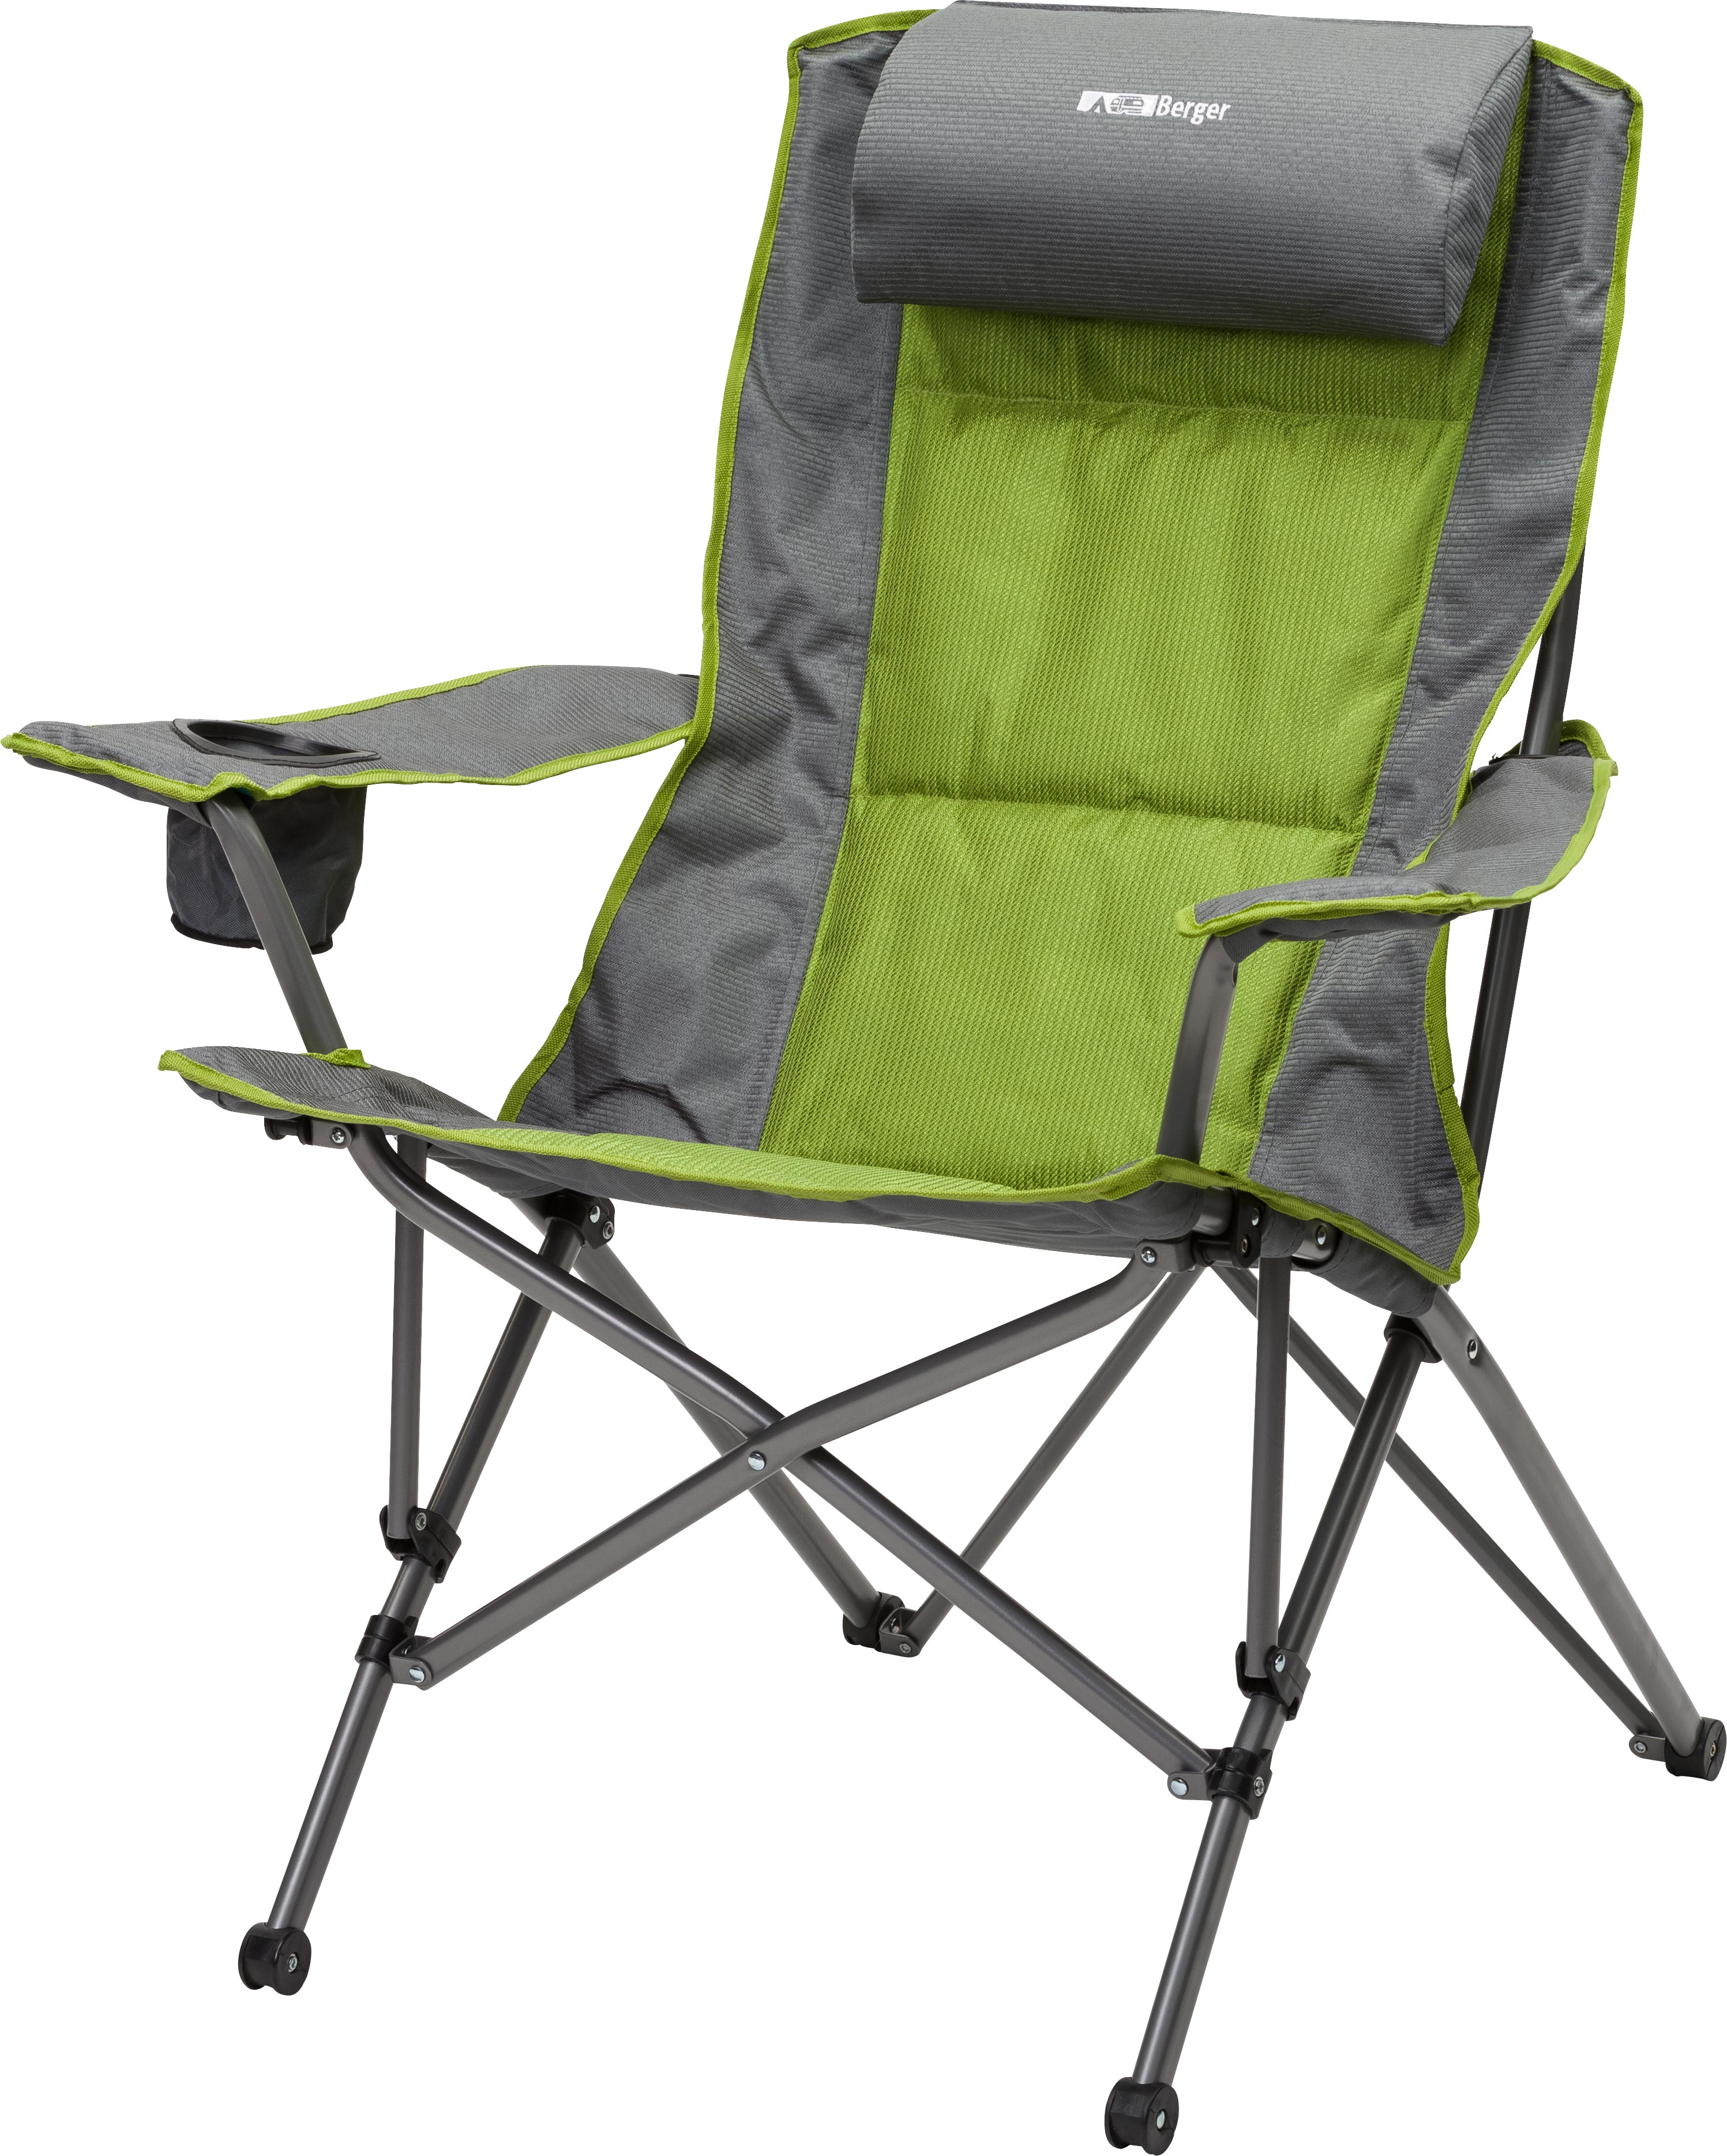 Складной стул складное кресло. Складное кресло Frosinone Camping Active. Мебель для кемпинга Berger. Стул складной туристический JD-1005 33,5х27х35см. Blaupunkt стул туристический складной.